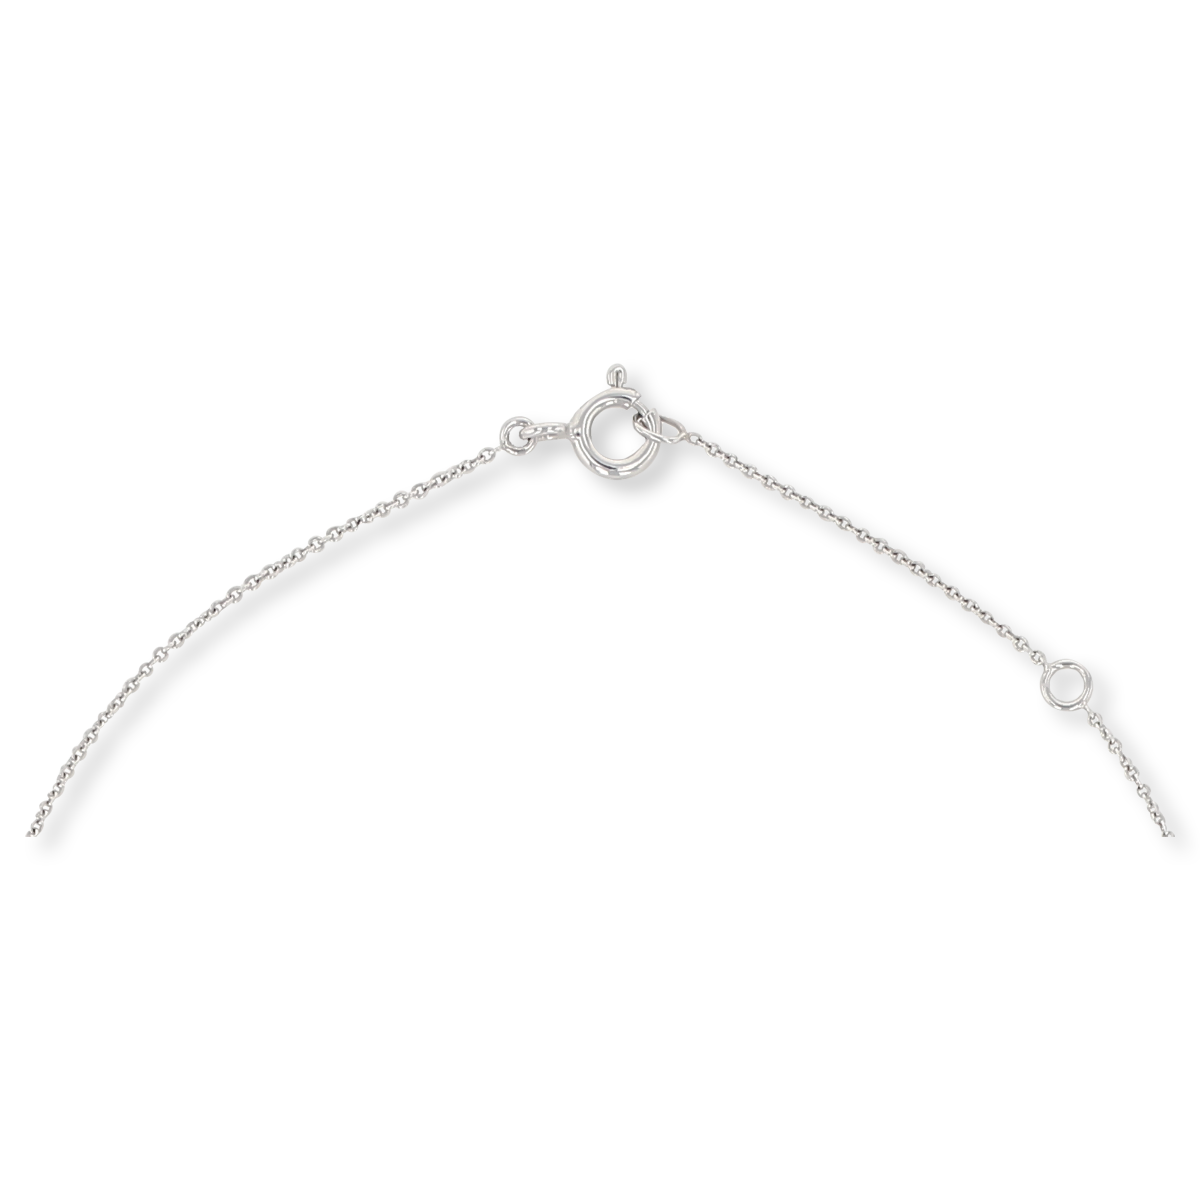 9ct White Gold Sapphire & Diamond Crescent Necklace